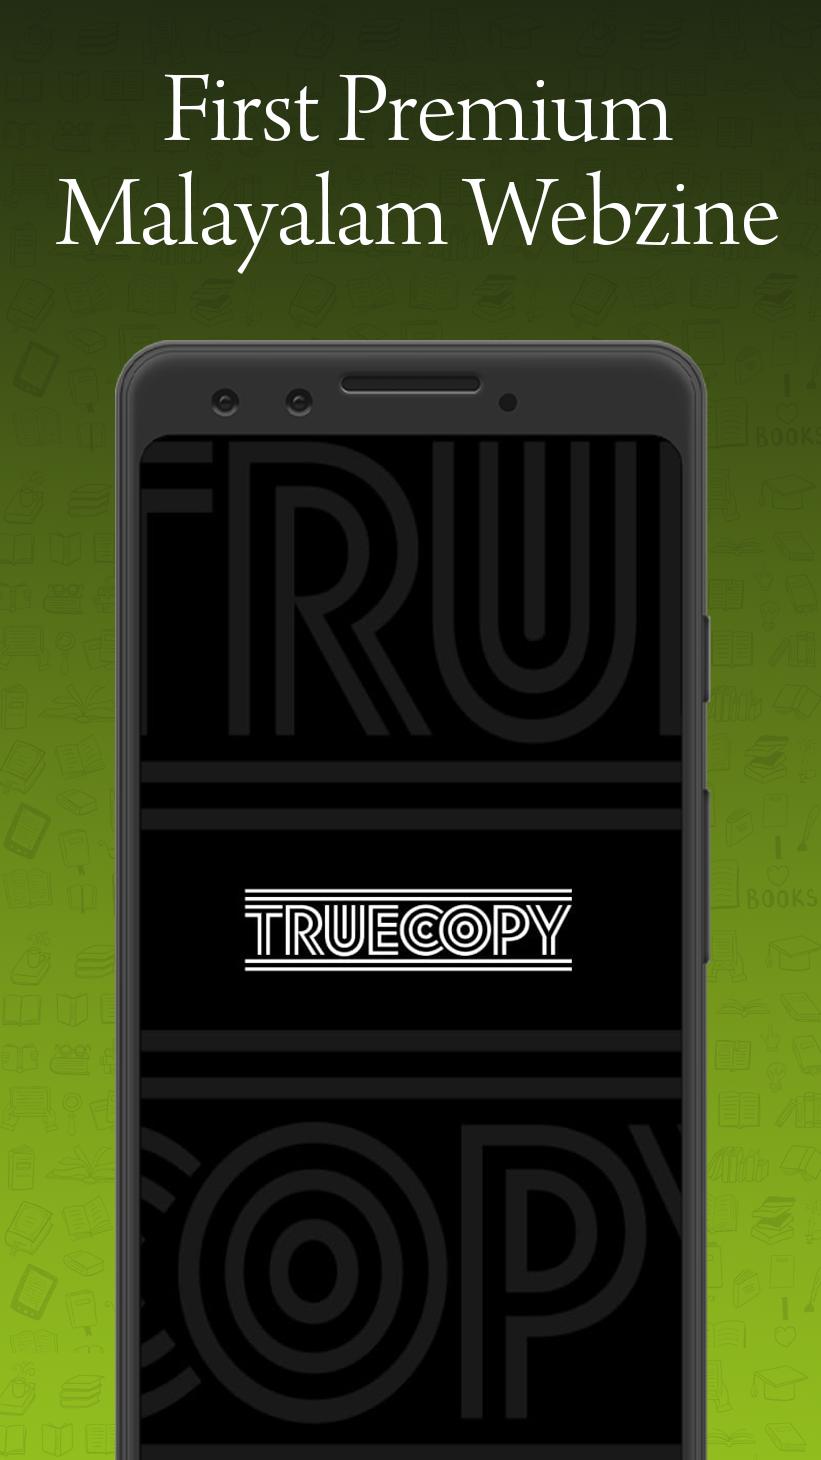 Truecopy Webzine 2.6 Screenshot 1